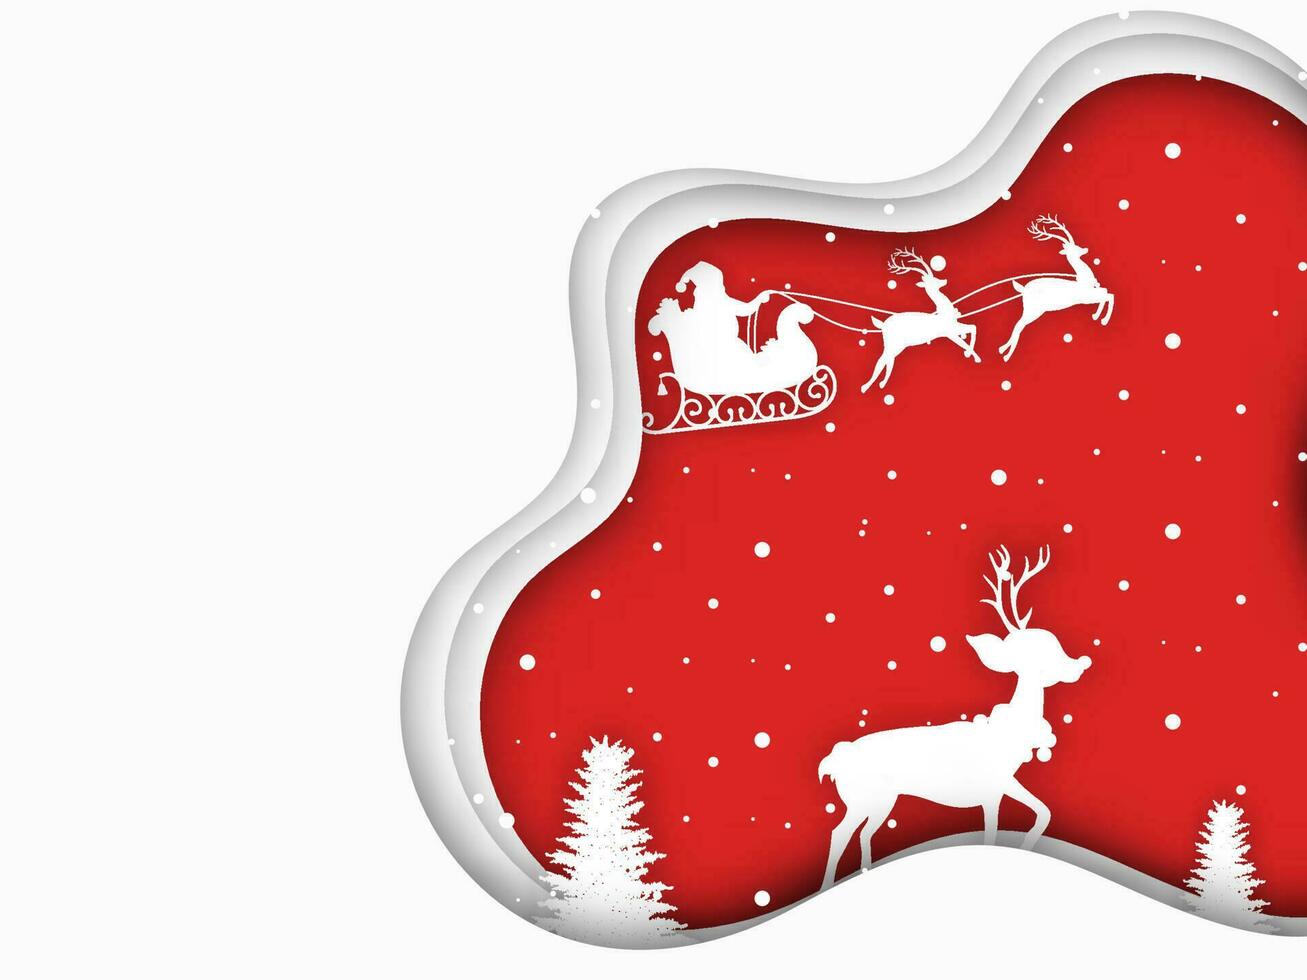 papel camada cortar cumprimento cartão Projeto com silhueta do santa equitação trenó, rena e neve cobrir árvore para alegre Natal celebração. vetor